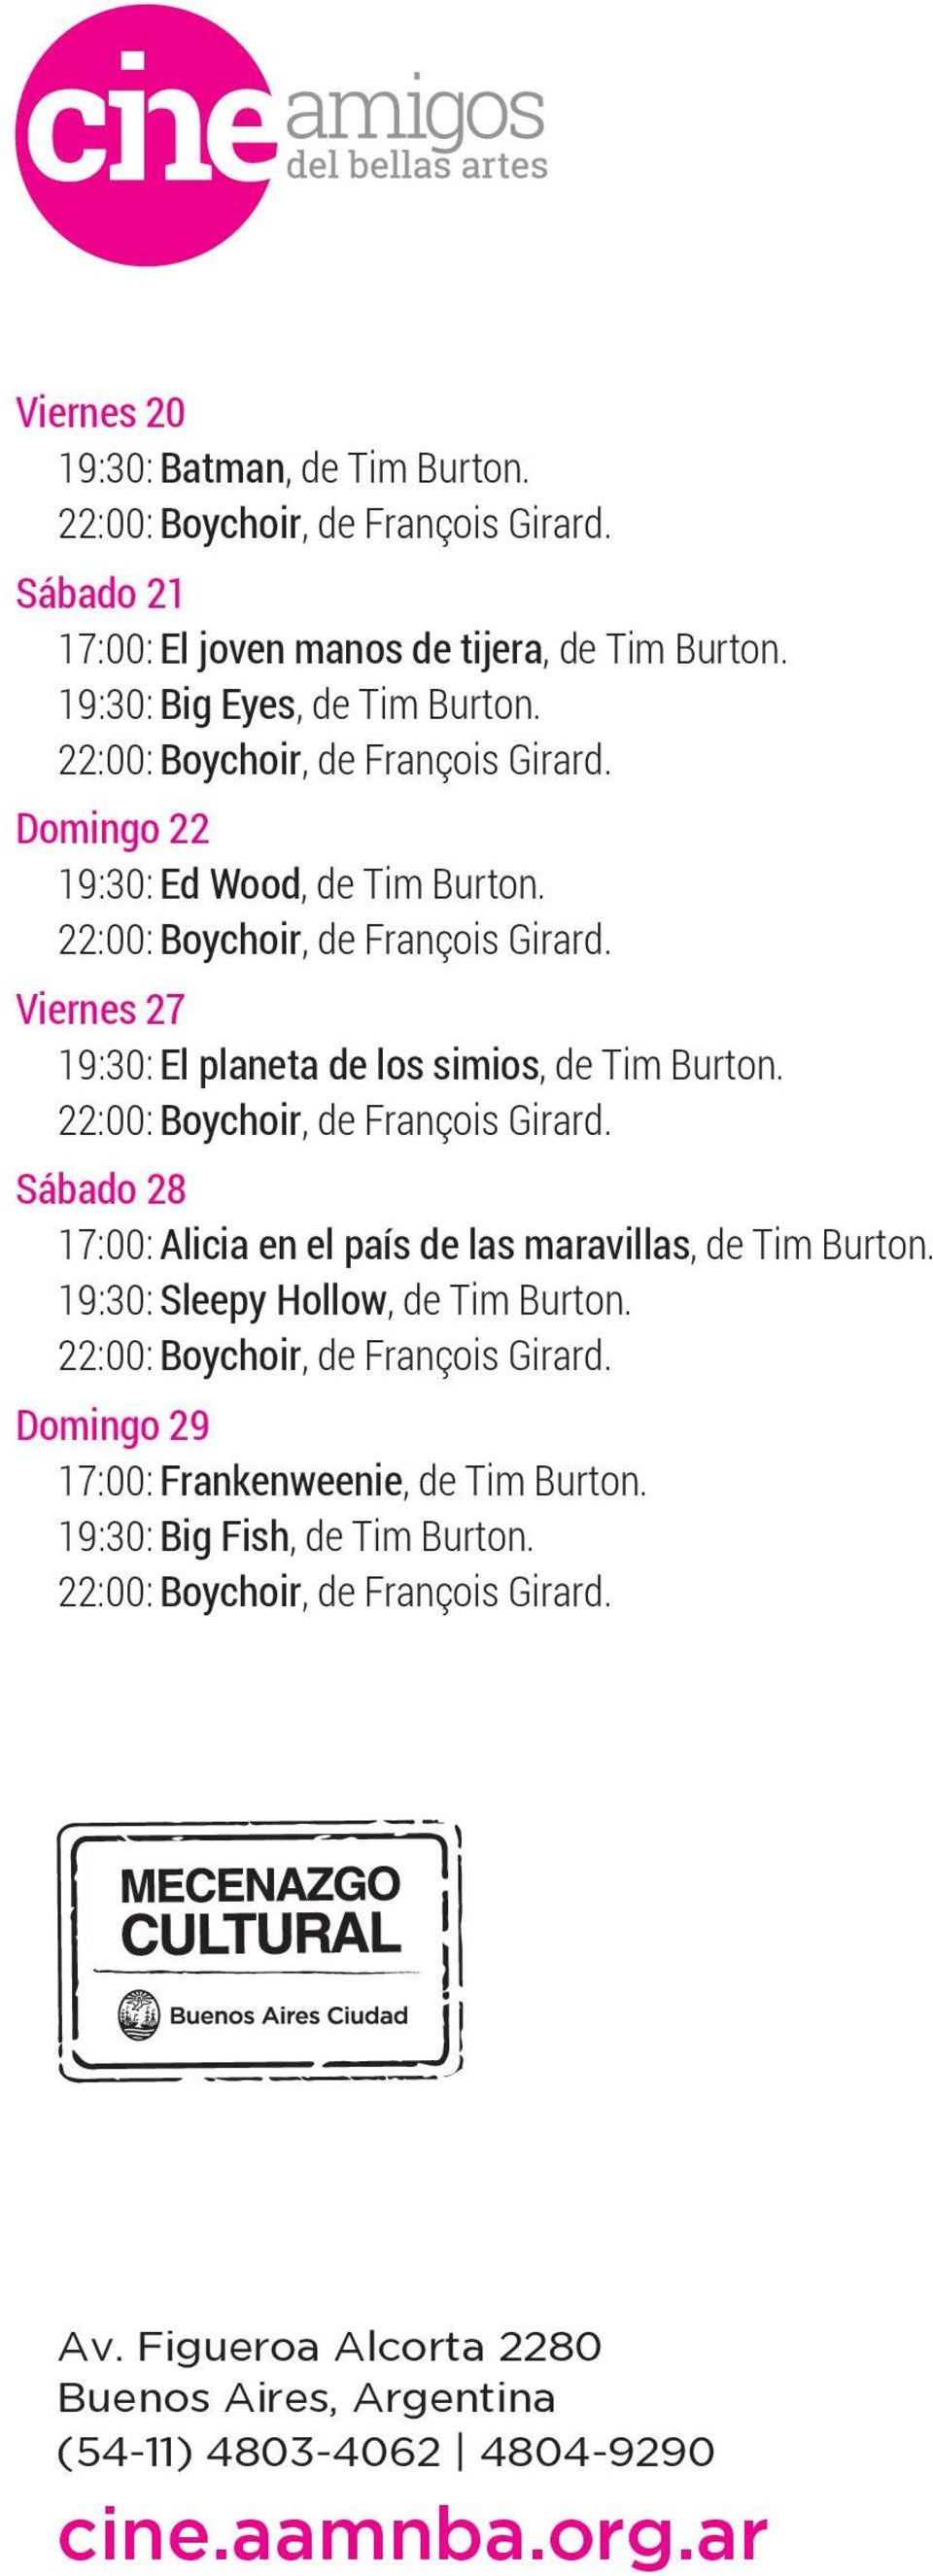 Viernes 27 19:30: El planeta de los simios, de Tim Burton. Sábado 28 17:00: Alicia en el país de las maravillas, de Tim Burton.